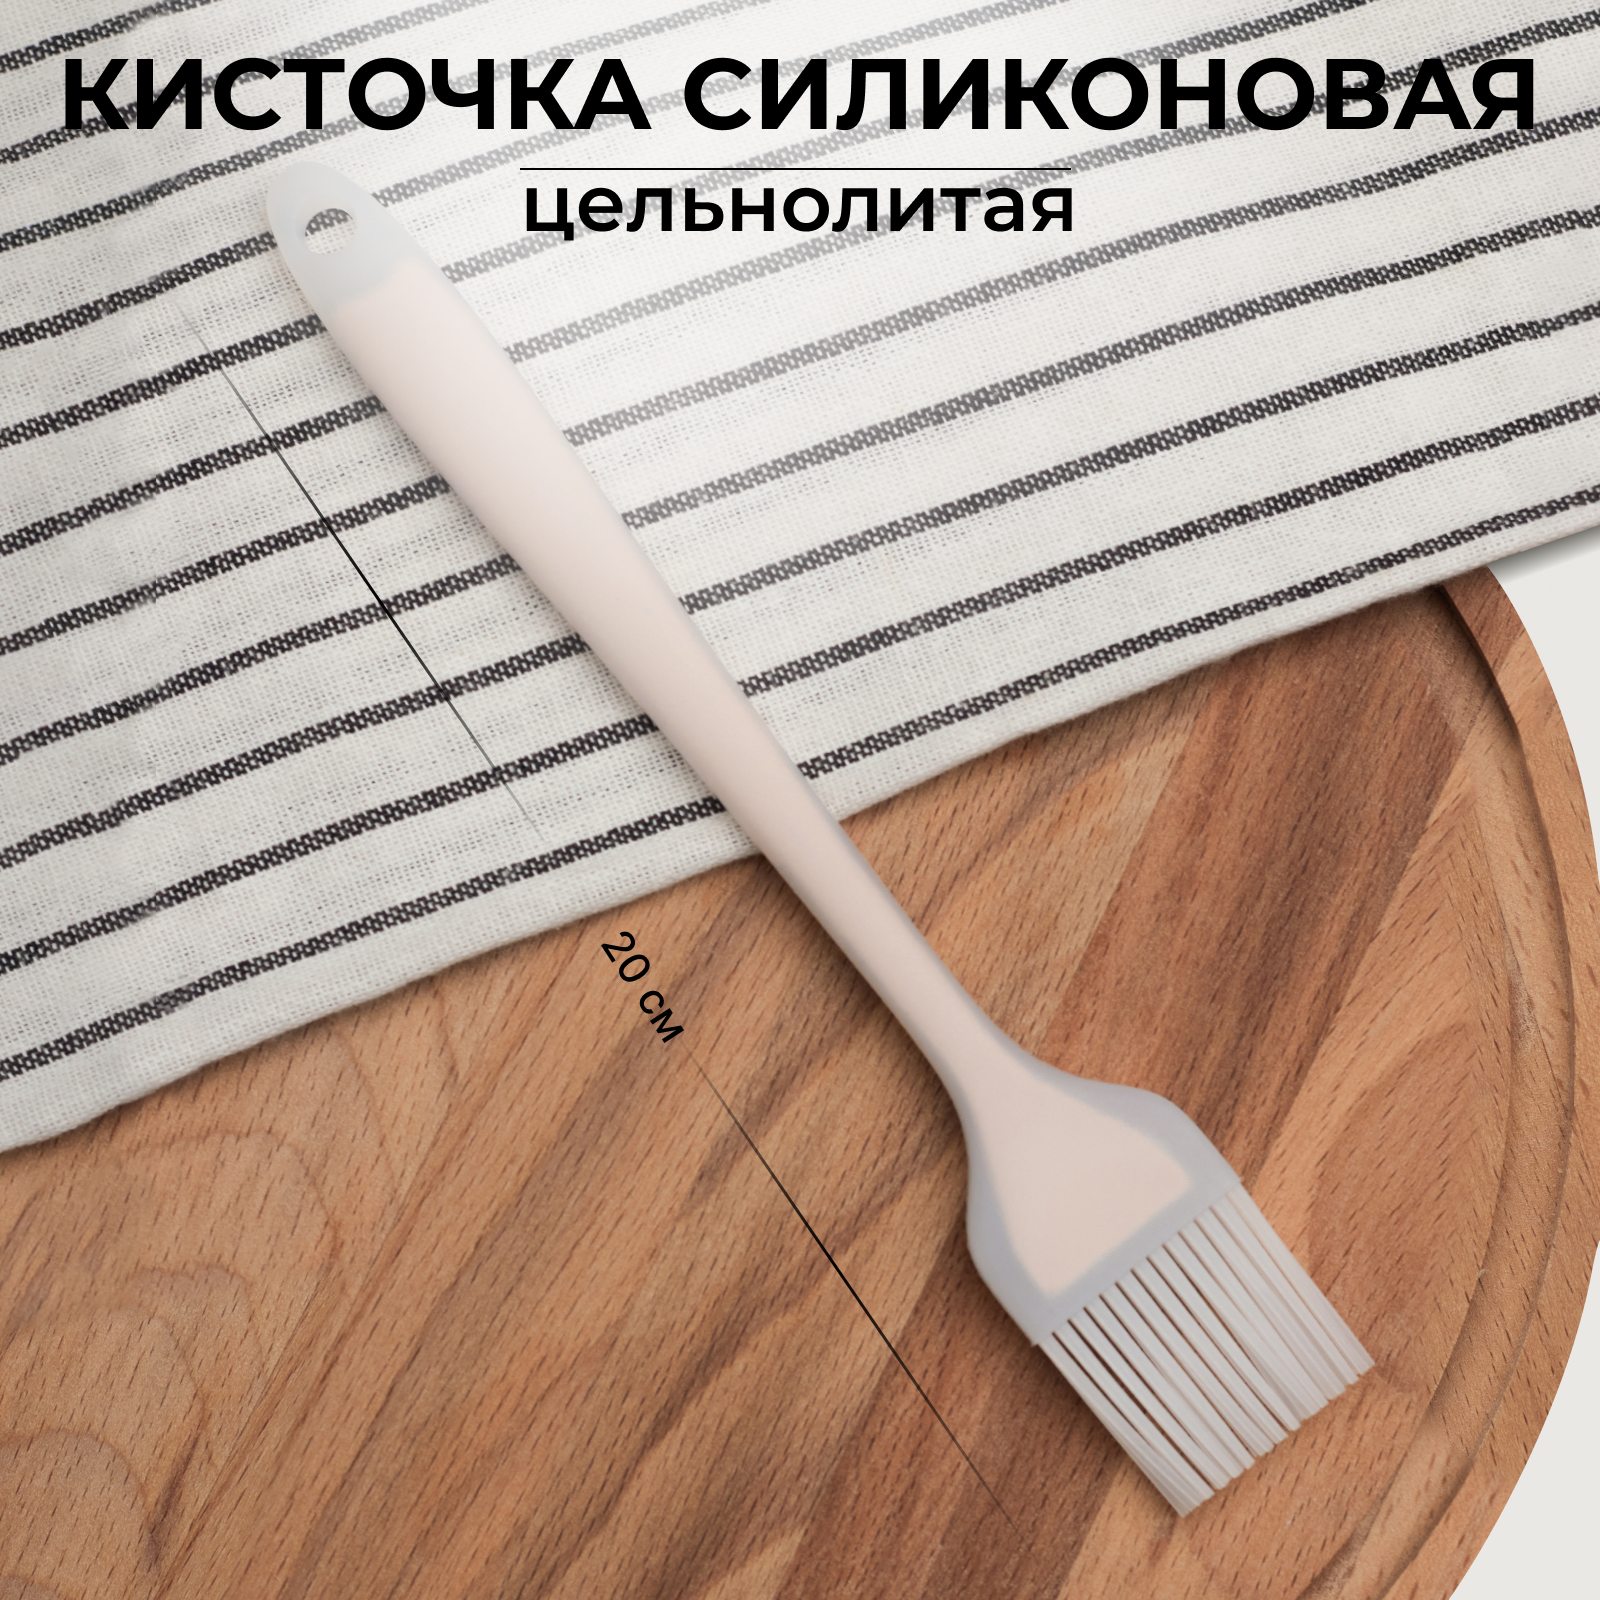 Кисточка для кухни FamilyLove 20х3 см, силиконовая, белая